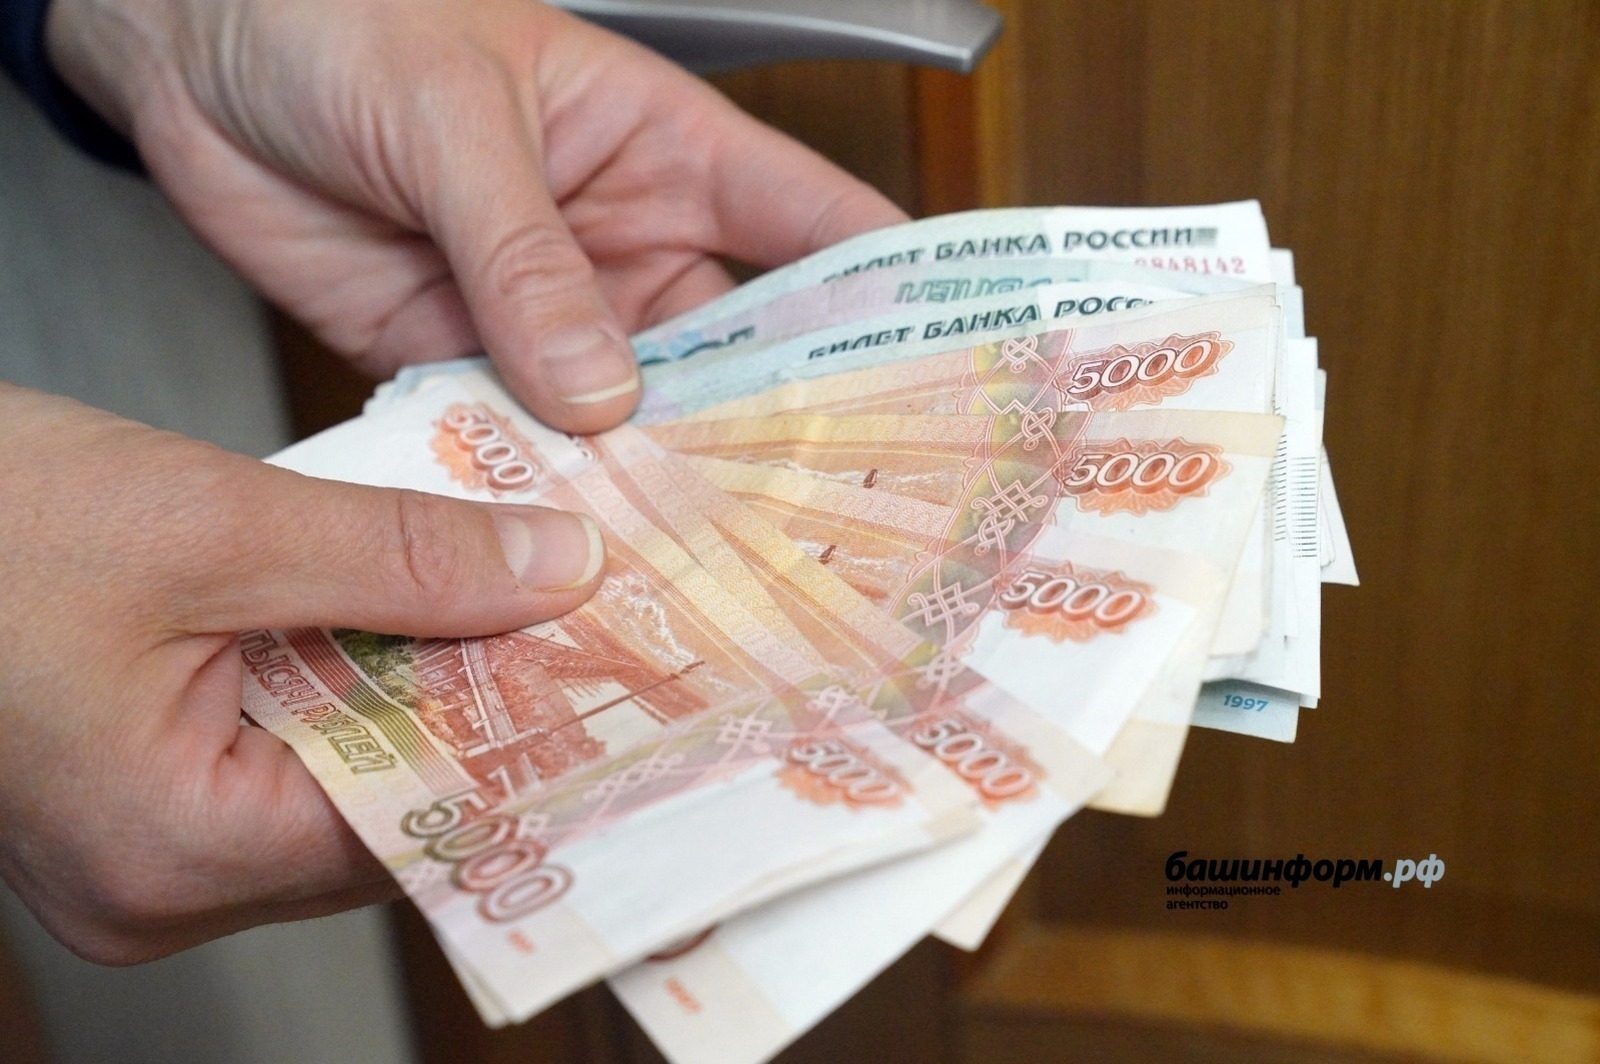 Информацию о самых высокооплачиваемых вакансиях в Башкортостане